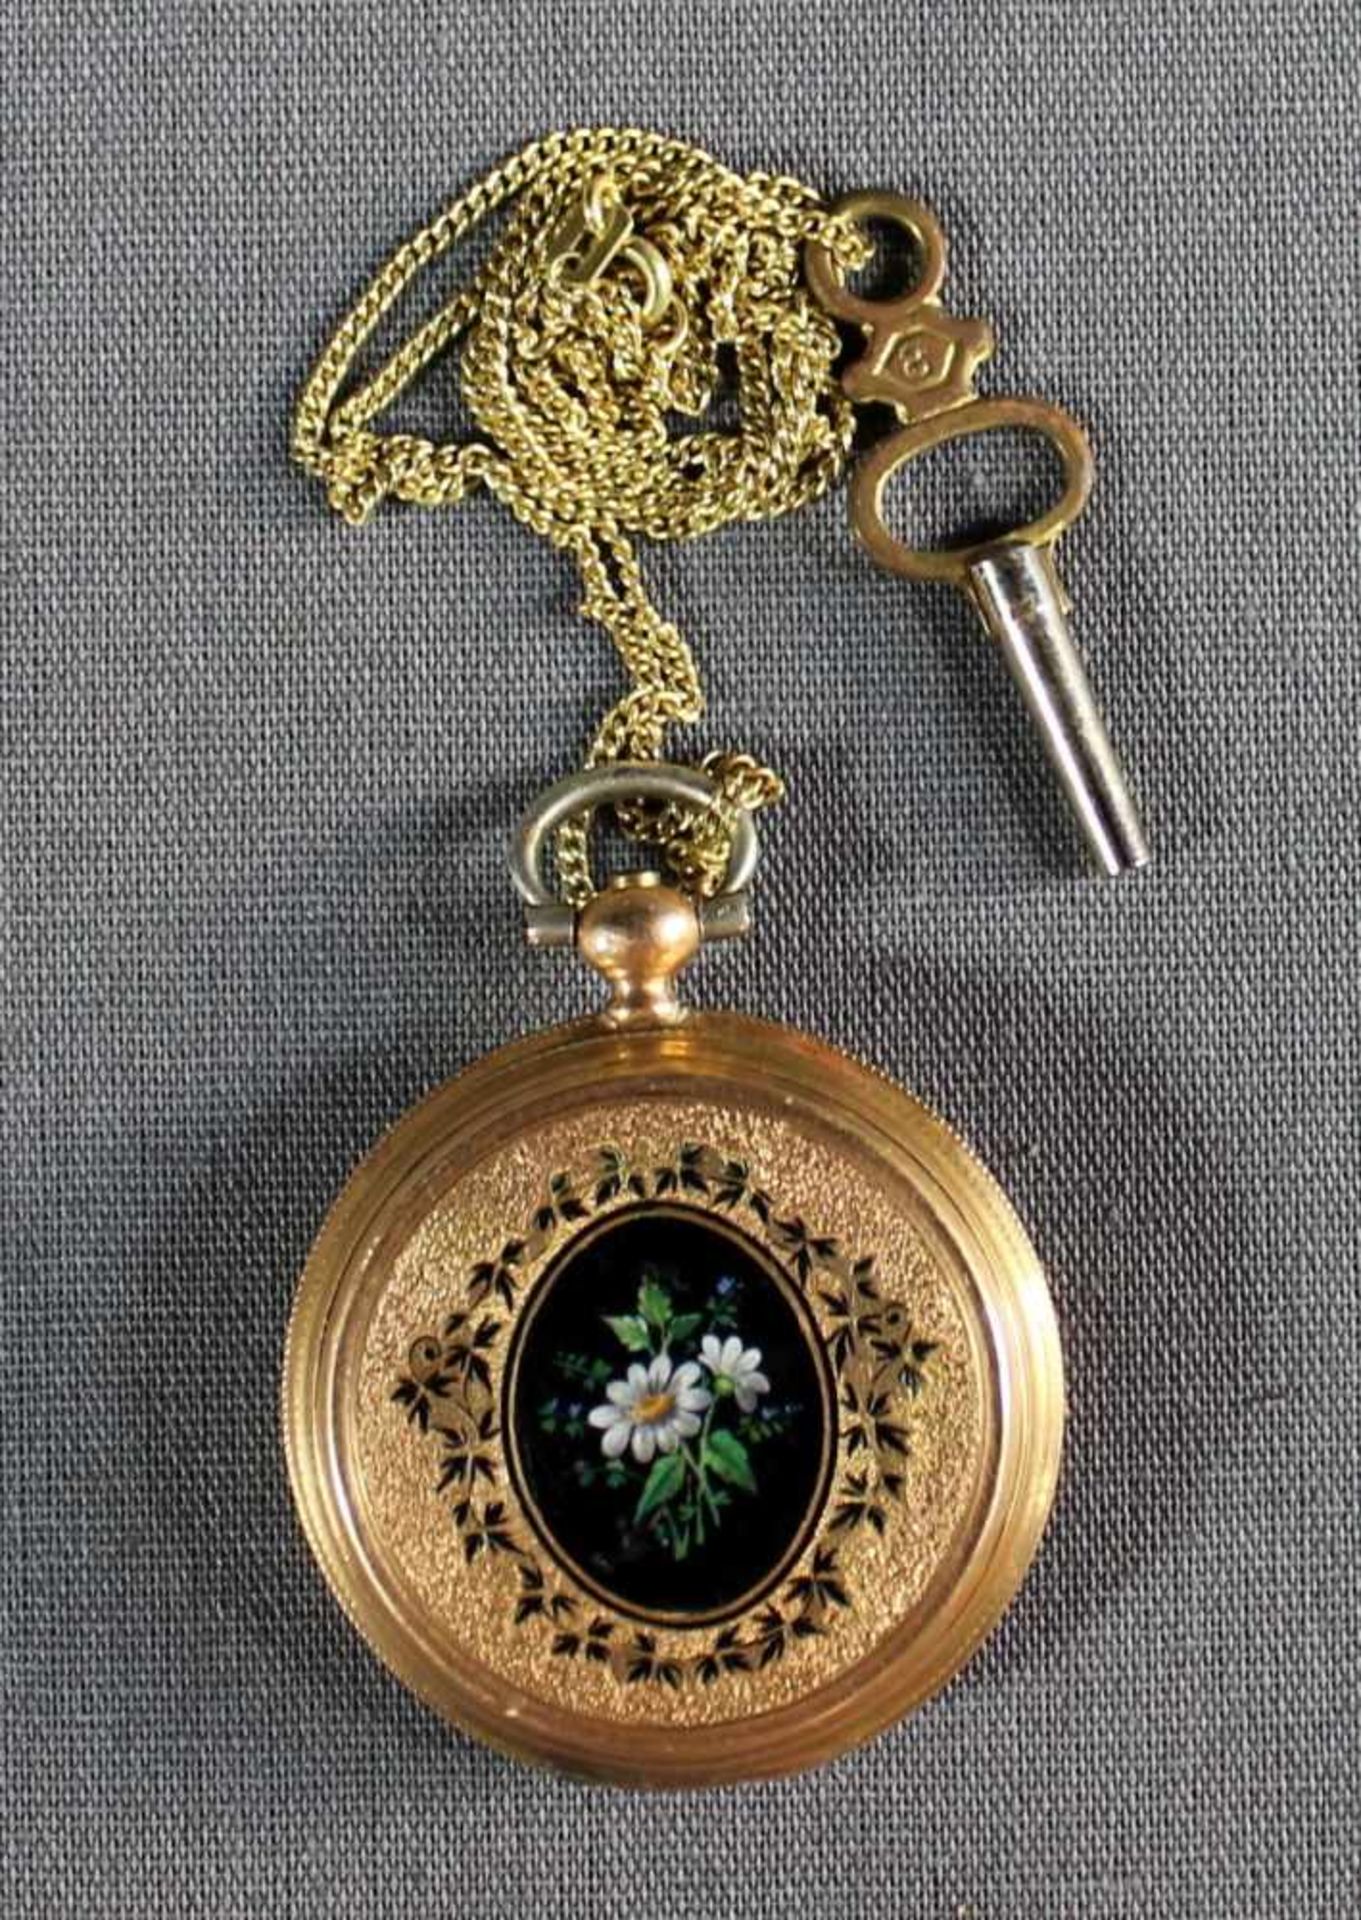 1 Damen-Taschenuhr 14kt.Gg (585/000), Schlüsselaufzug, No. 51511, weißes Zifferblatt, schwarze - Bild 2 aus 4